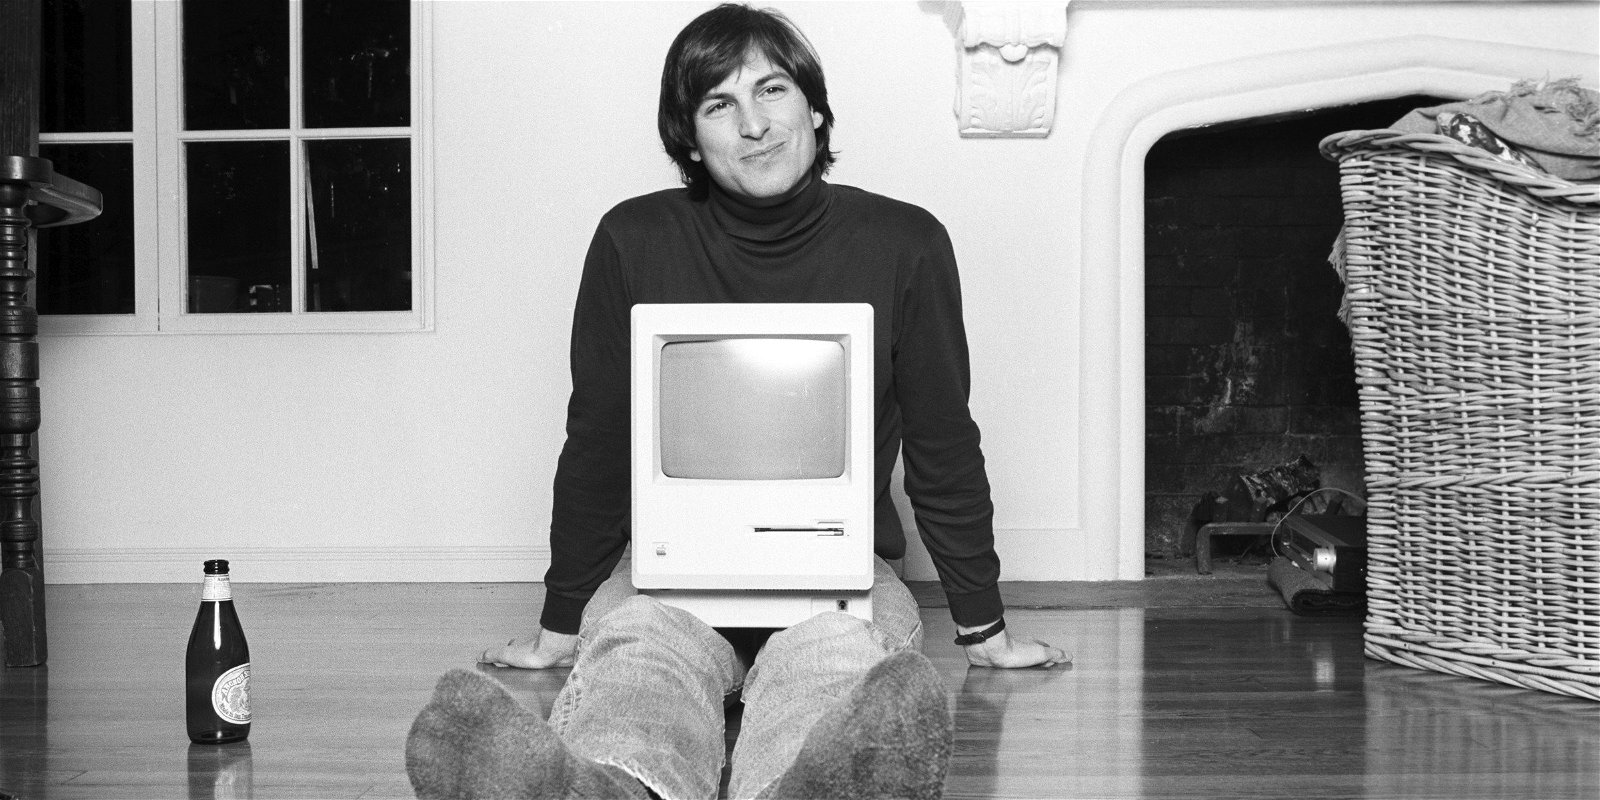 Los 16 consejos de Steve Jobs para tener éxito en la vida (y en Apple)